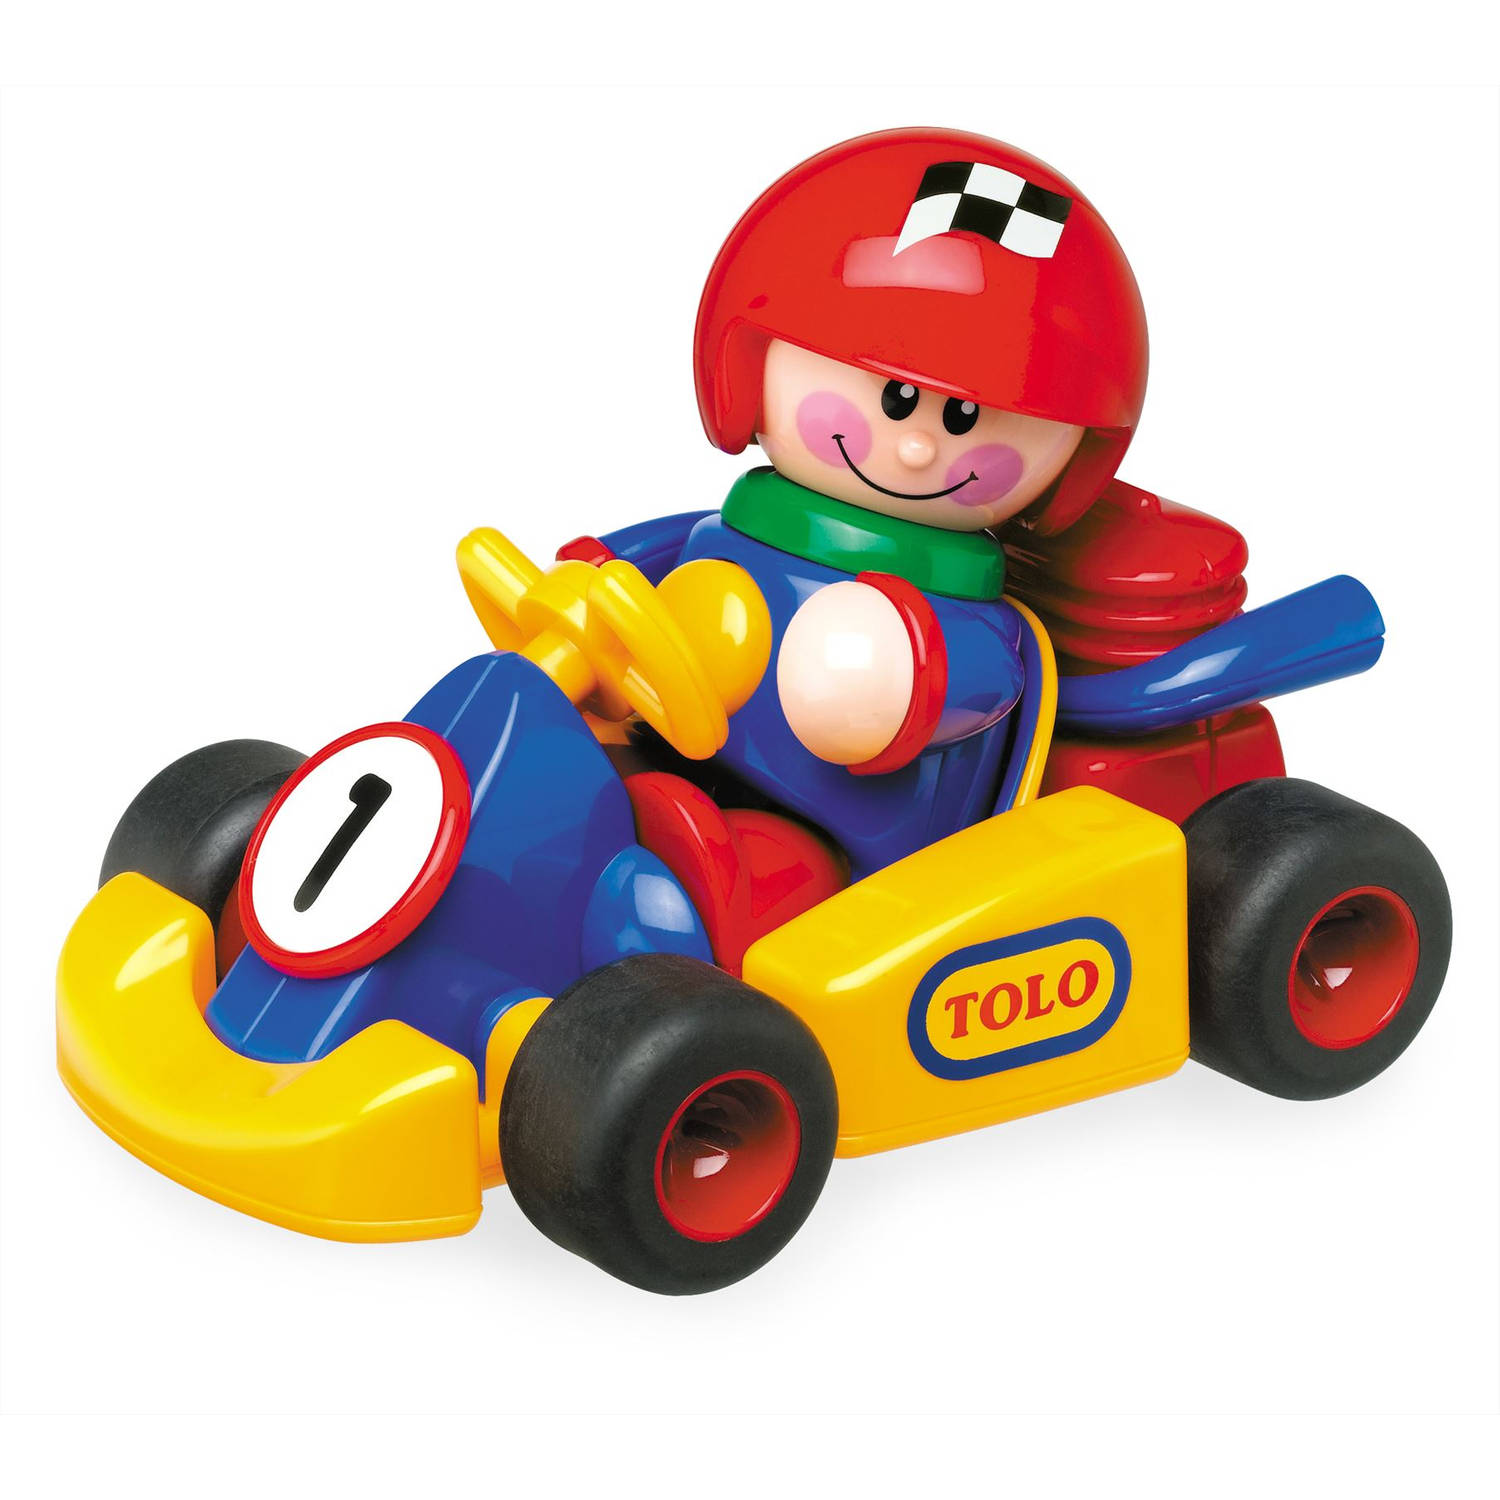 Tolo First Friends Speelgoedvoertuig - Go Kart & Jongen